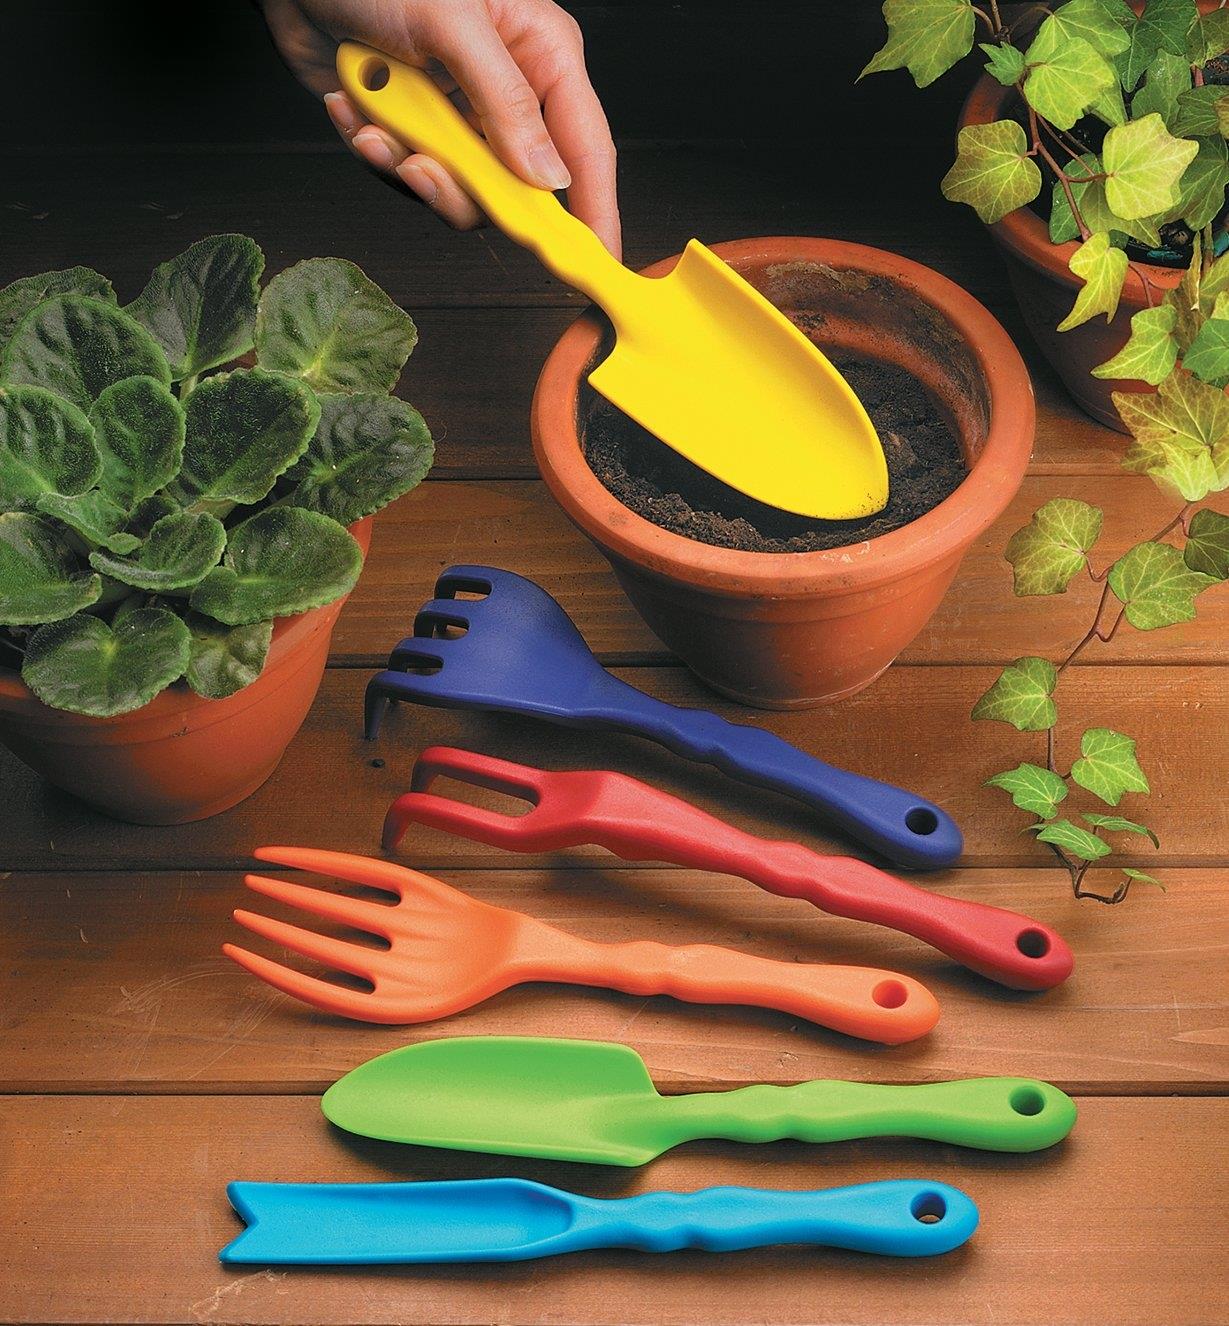 Petits outils de jardinage sur une terrasse avec des plantes en pot